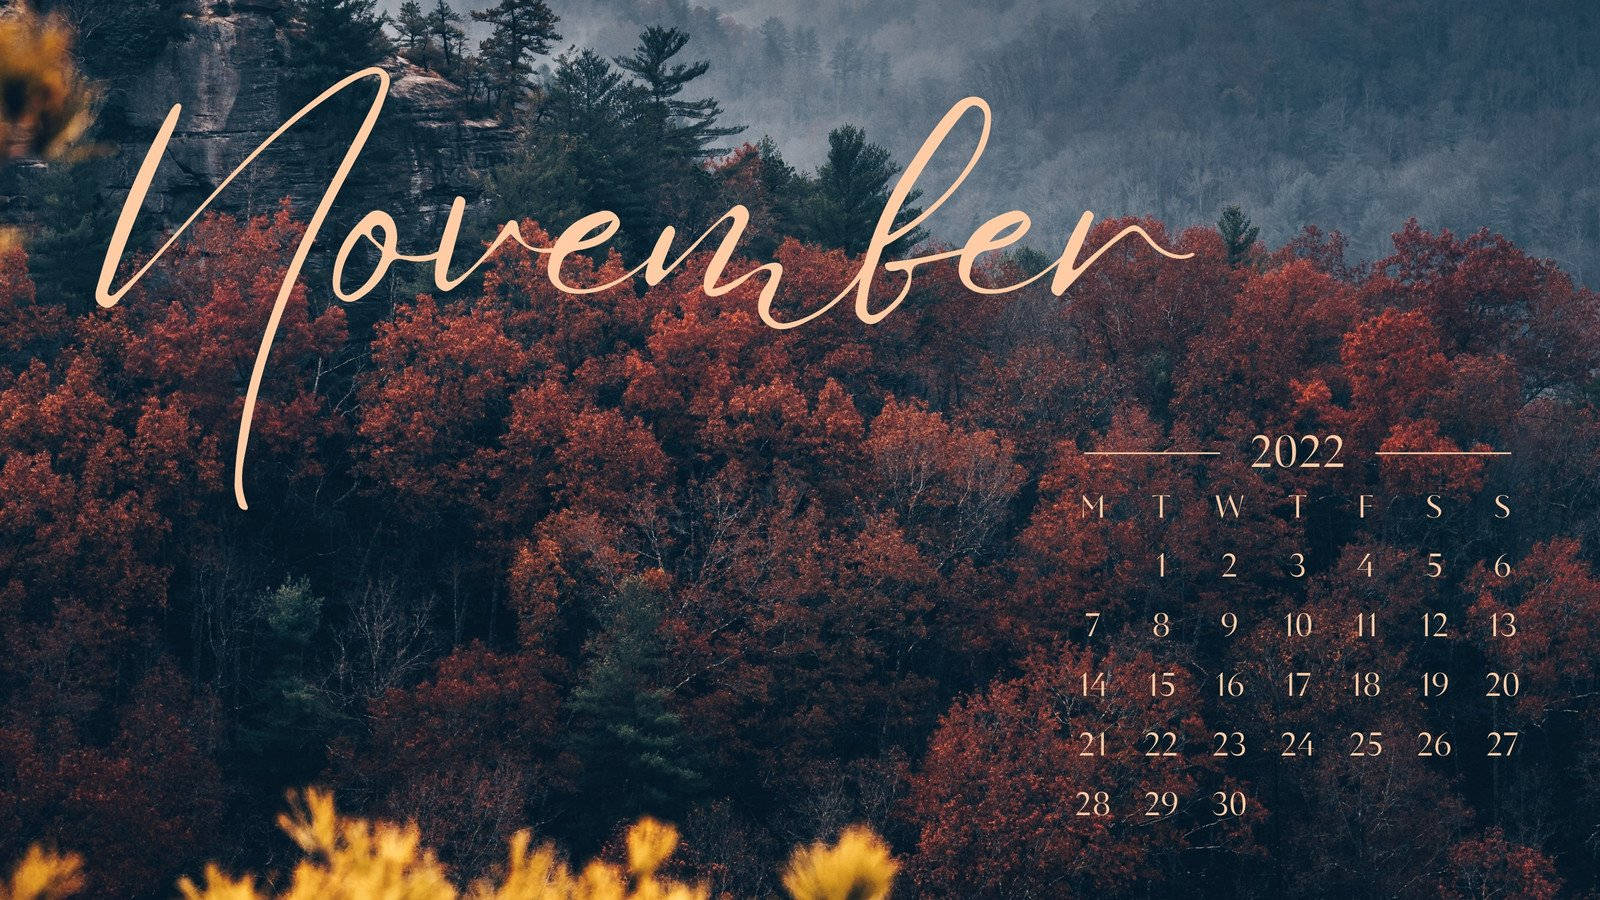 Efterår Aestetisk Laptop November Kalender 2022 Wallpaper